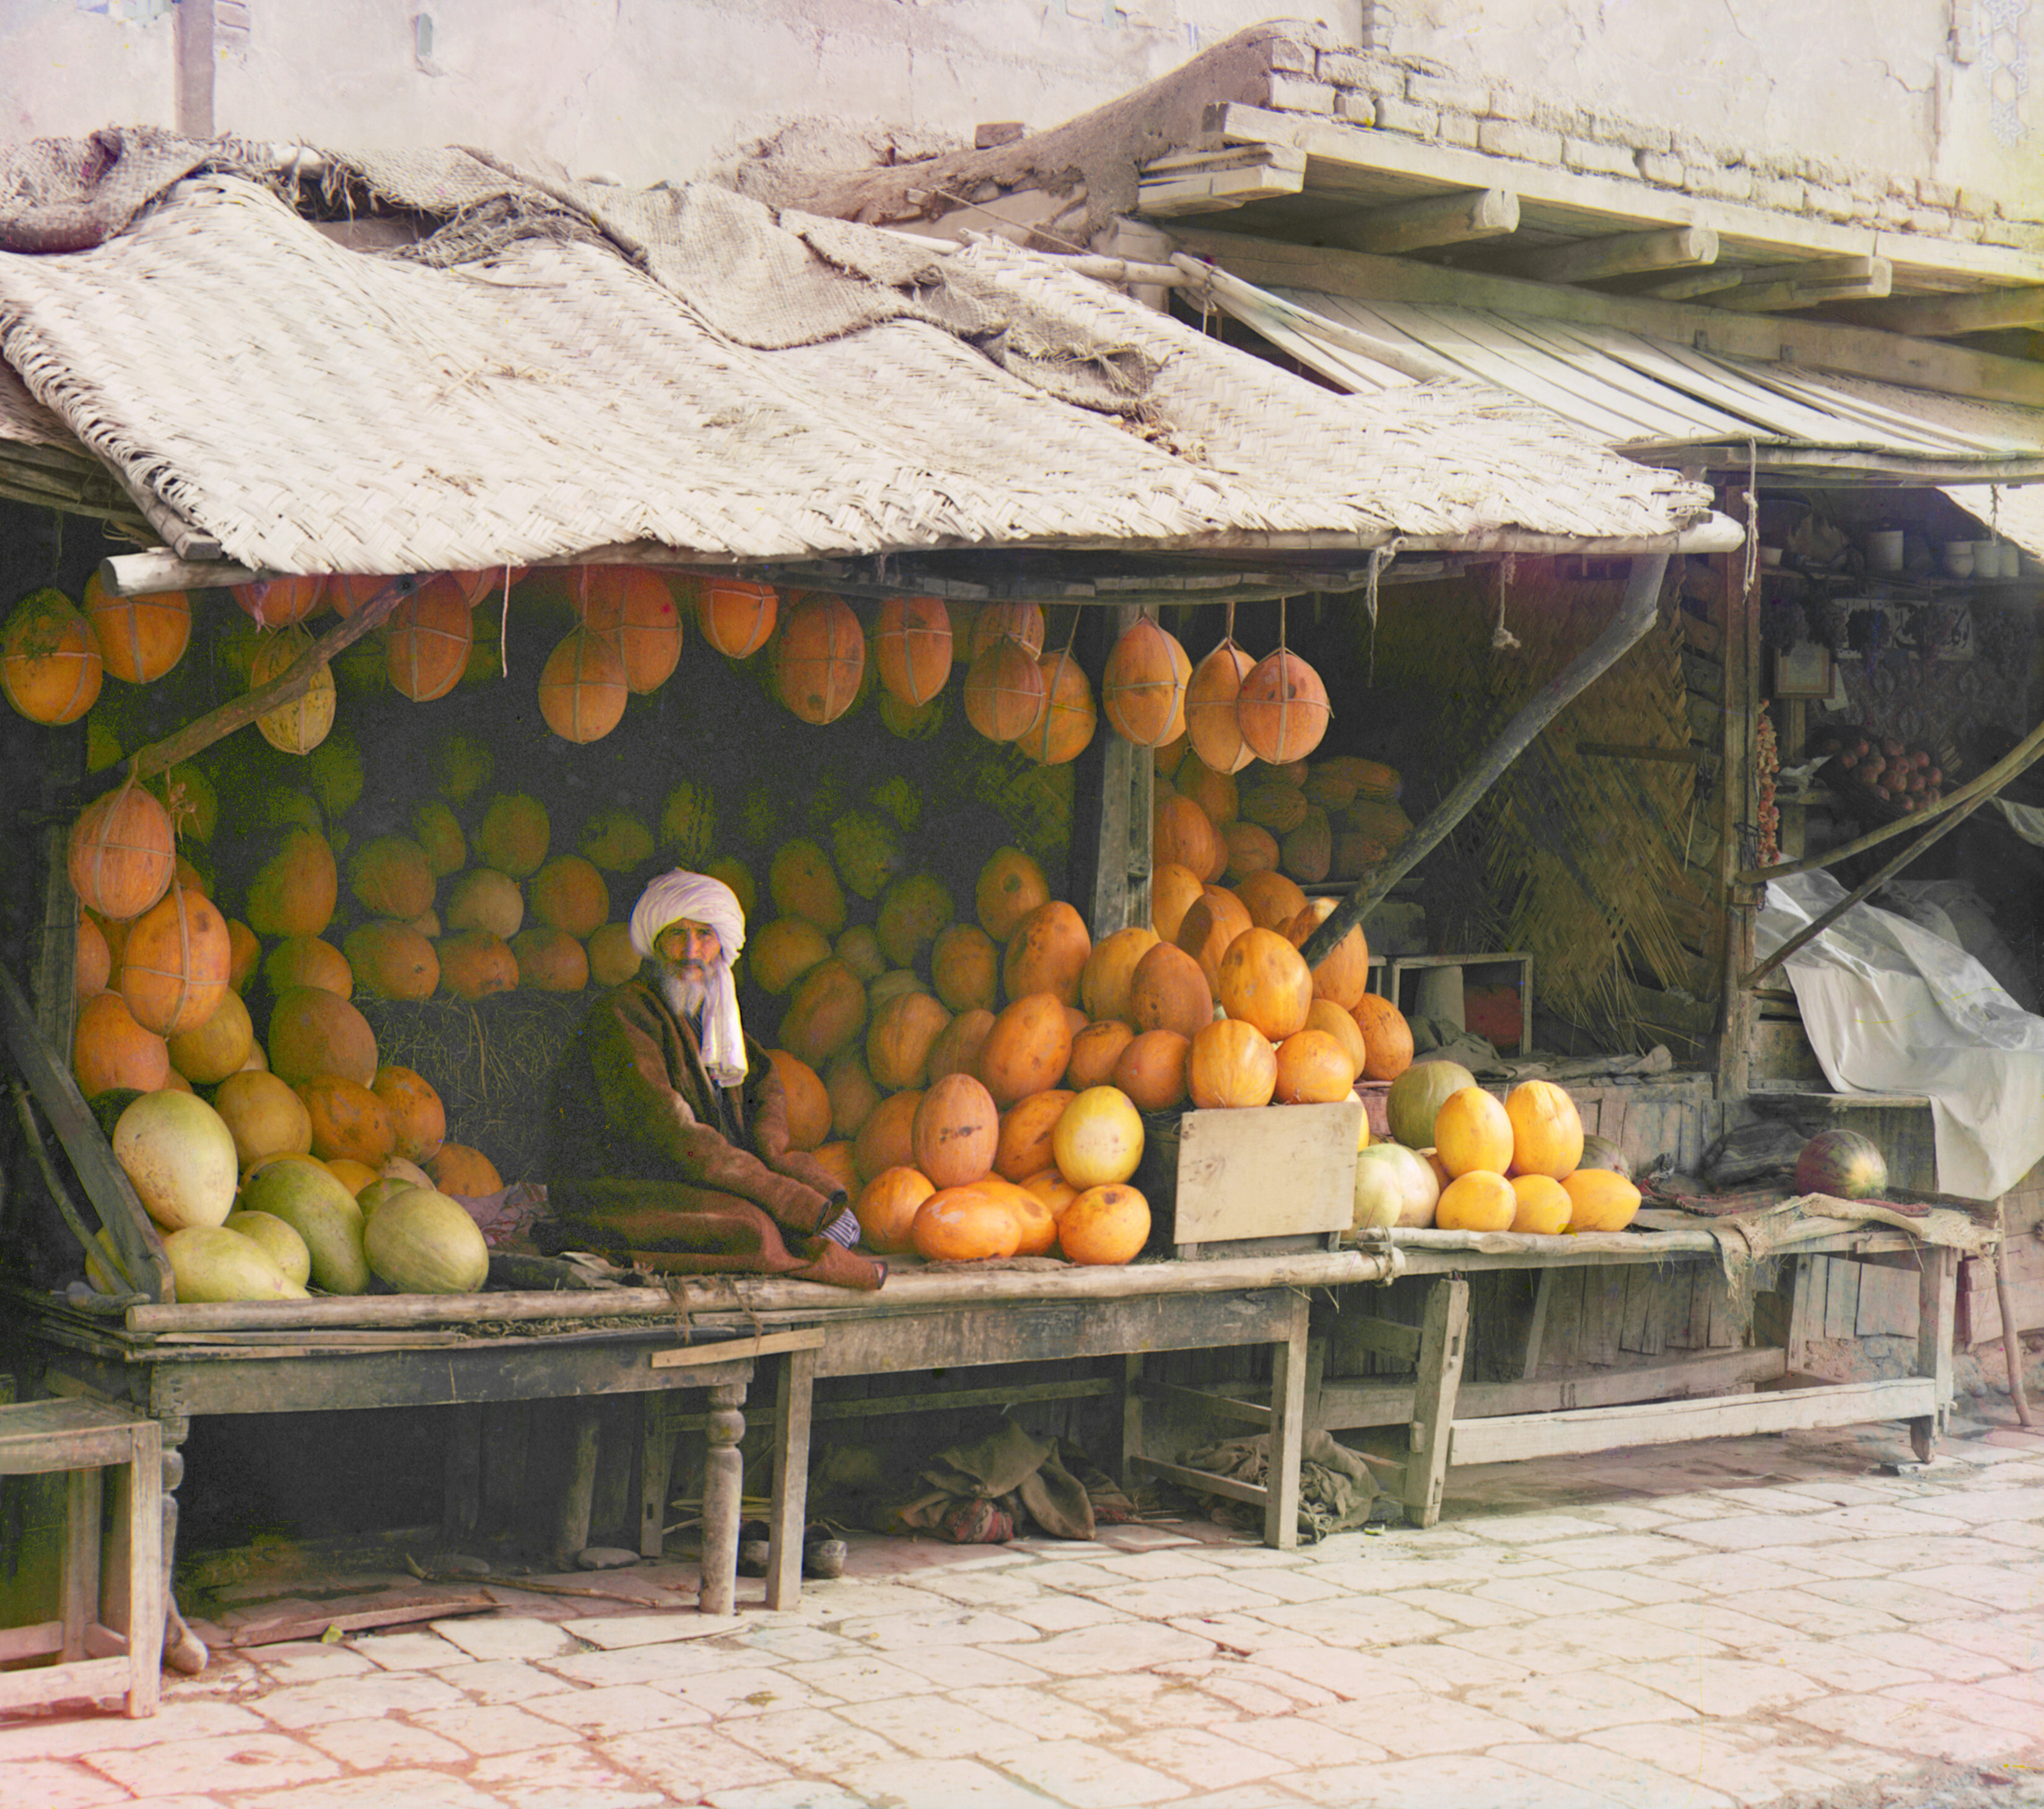 Продавец дыни. Самарканд, 1905-1915, фотограф Сергей Прокудин-Горский